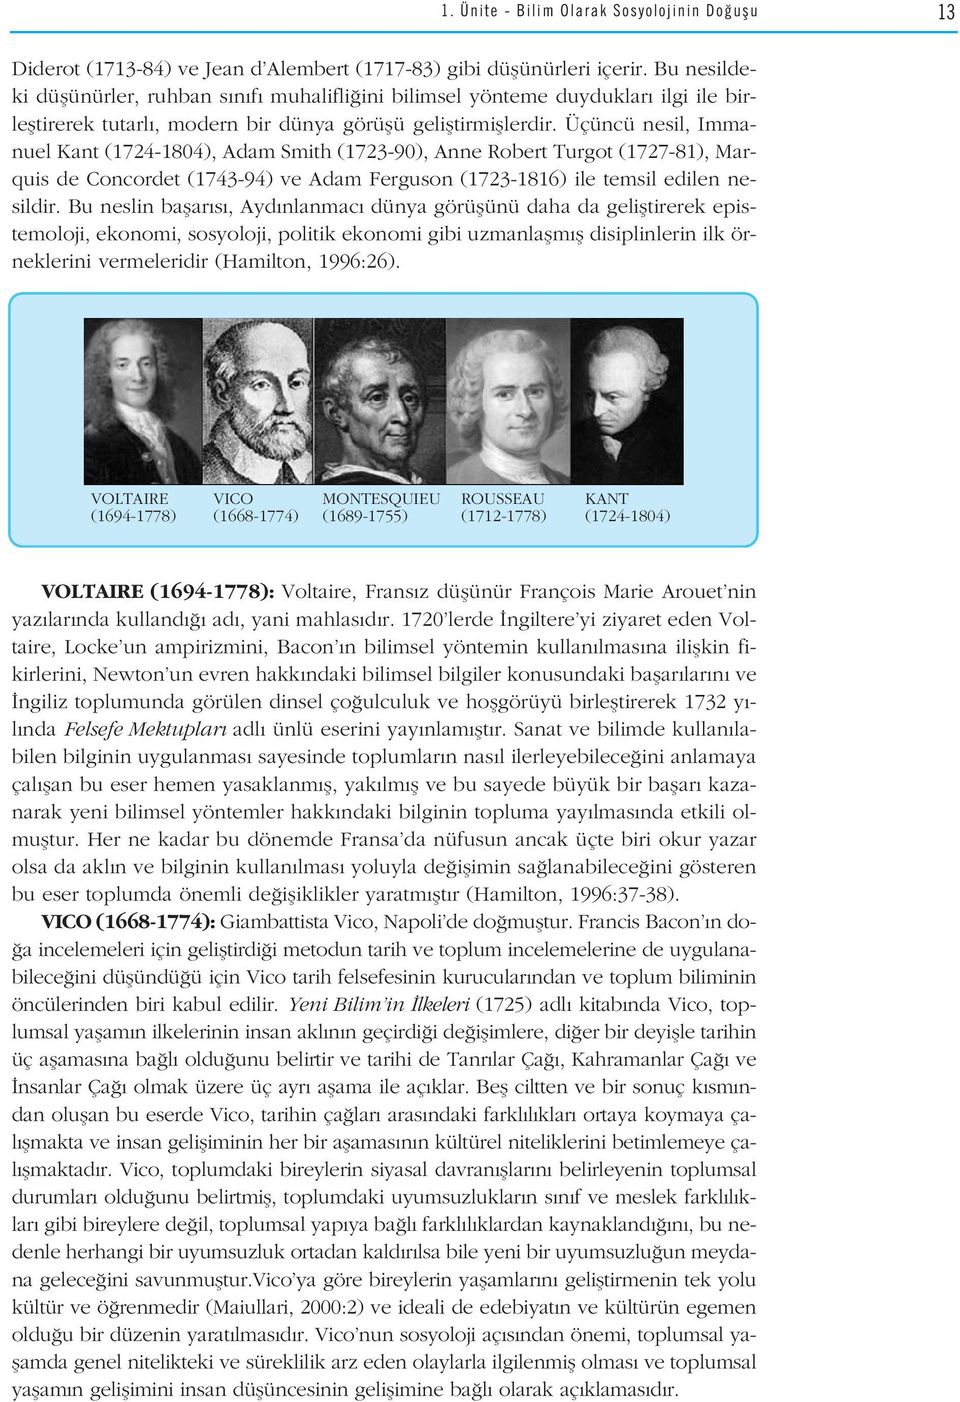 Üçüncü nesil, Immanuel Kant (1724-1804), Adam Smith (1723-90), Anne Robert Turgot (1727-81), Marquis de Concordet (1743-94) ve Adam Ferguson (1723-1816) ile temsil edilen nesildir.